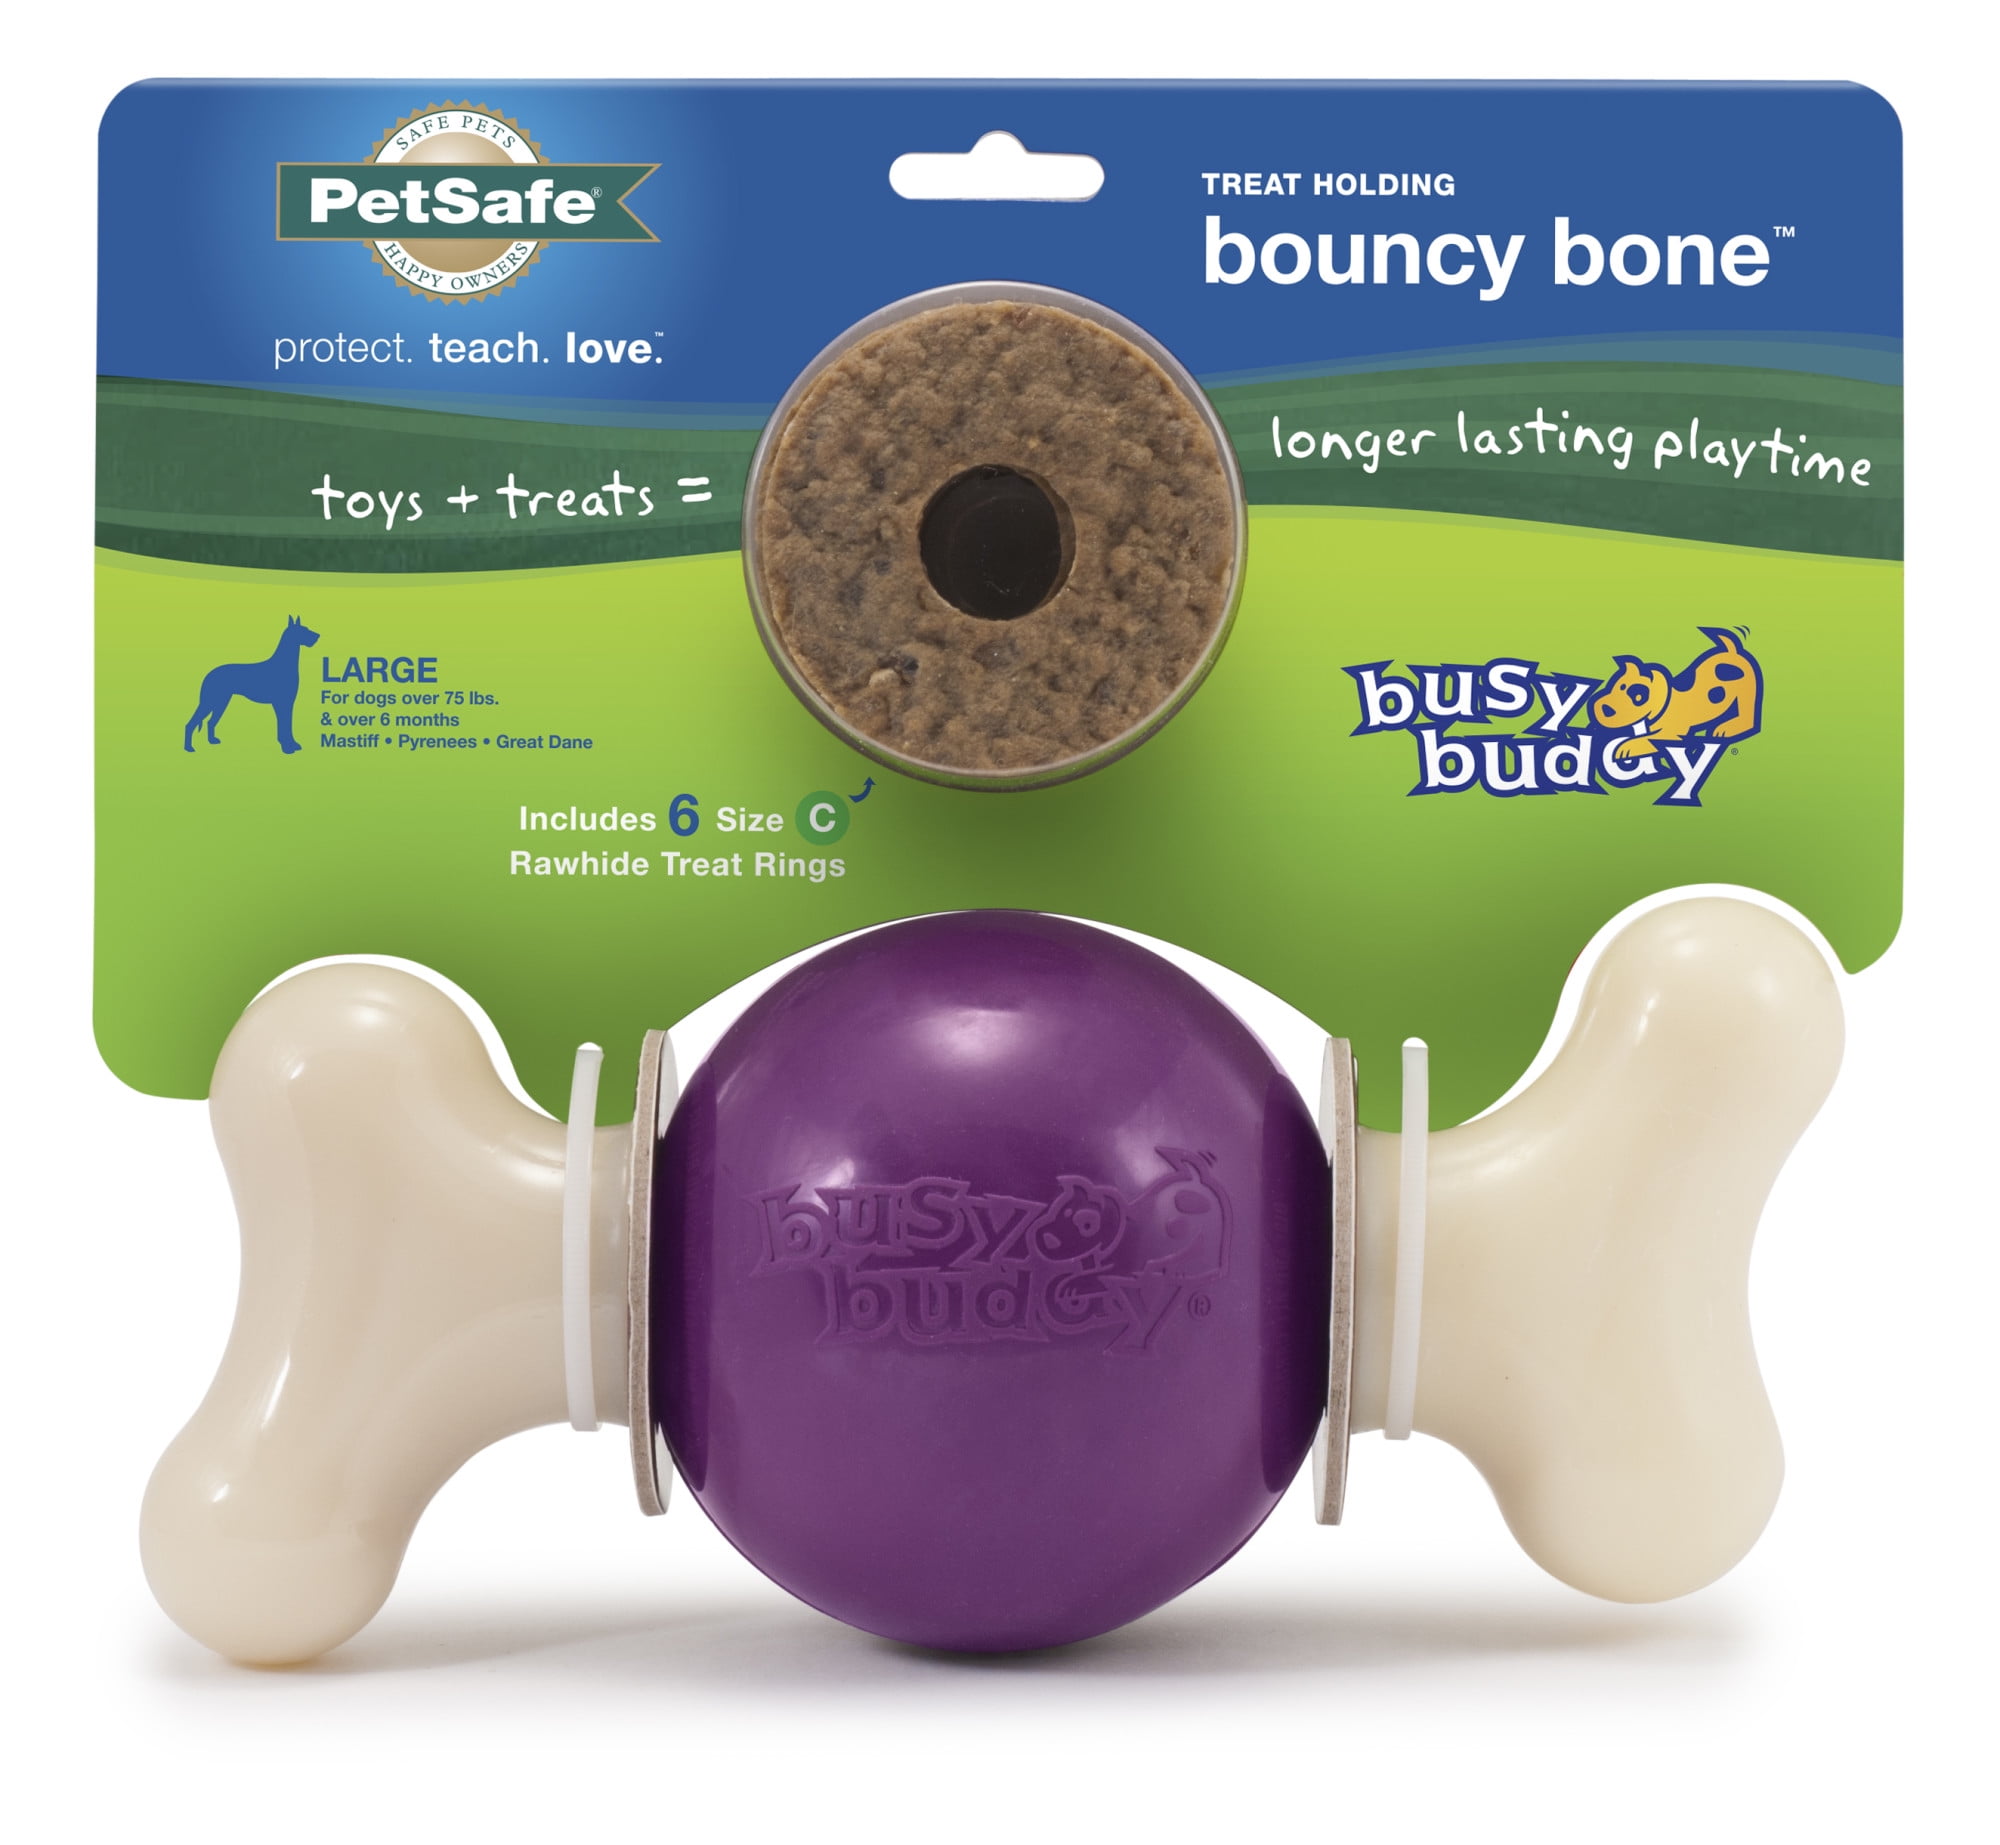 PetSafe Busy Buddy BRISTLE BONE Dog Toy Dental Treat and Chew Medium